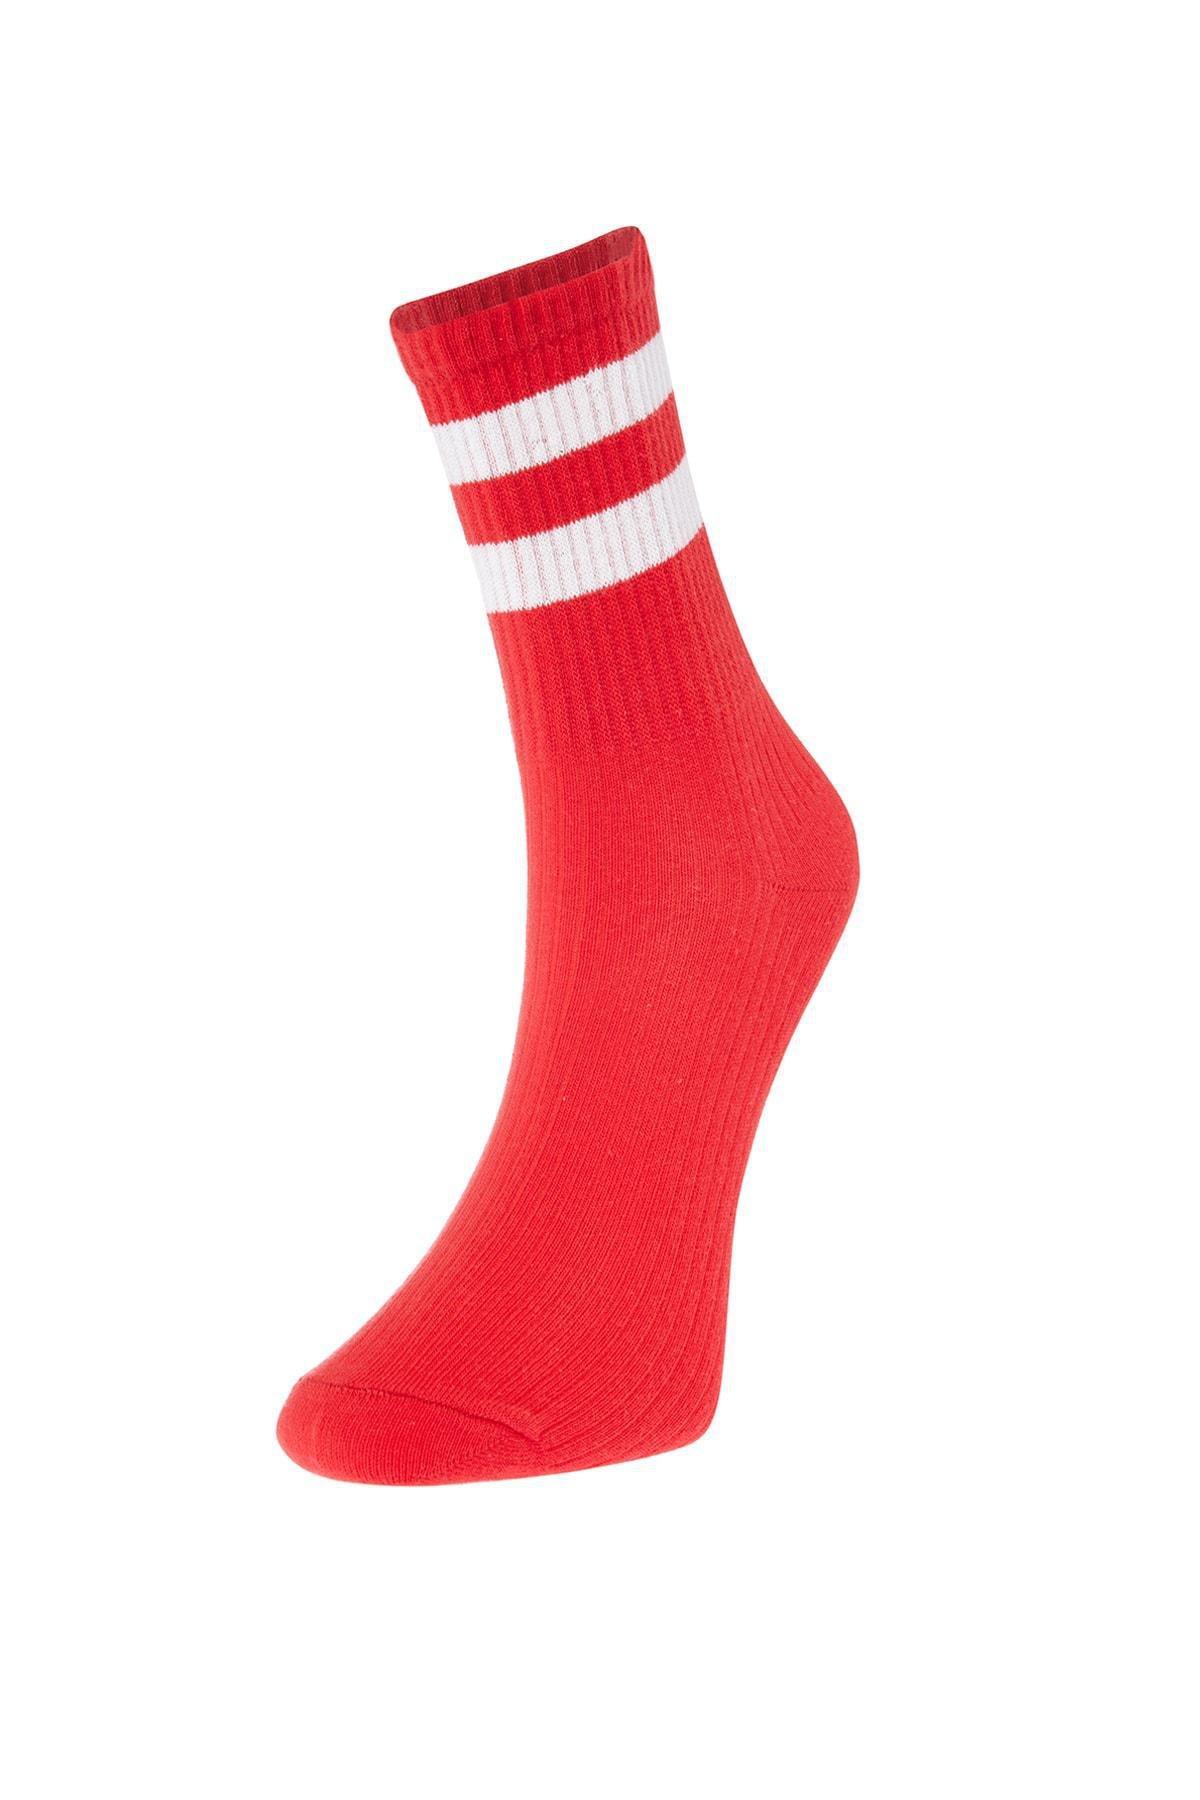 Trendyol - Multicolour Striped Socks, Set Of 5